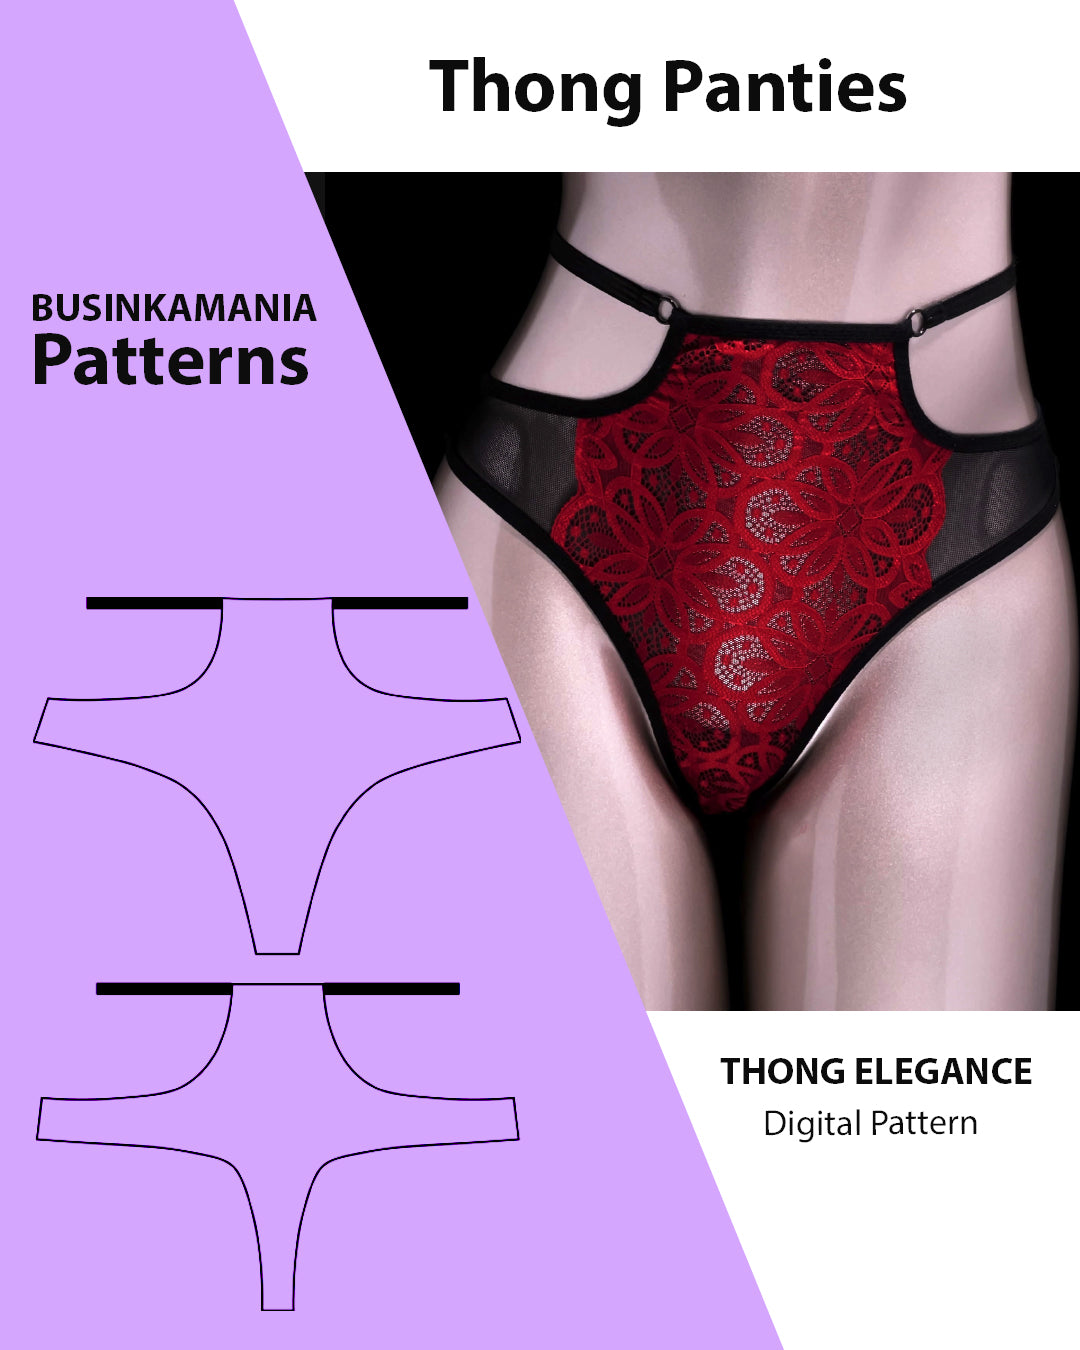 Thong Elegance Sewing Pattern